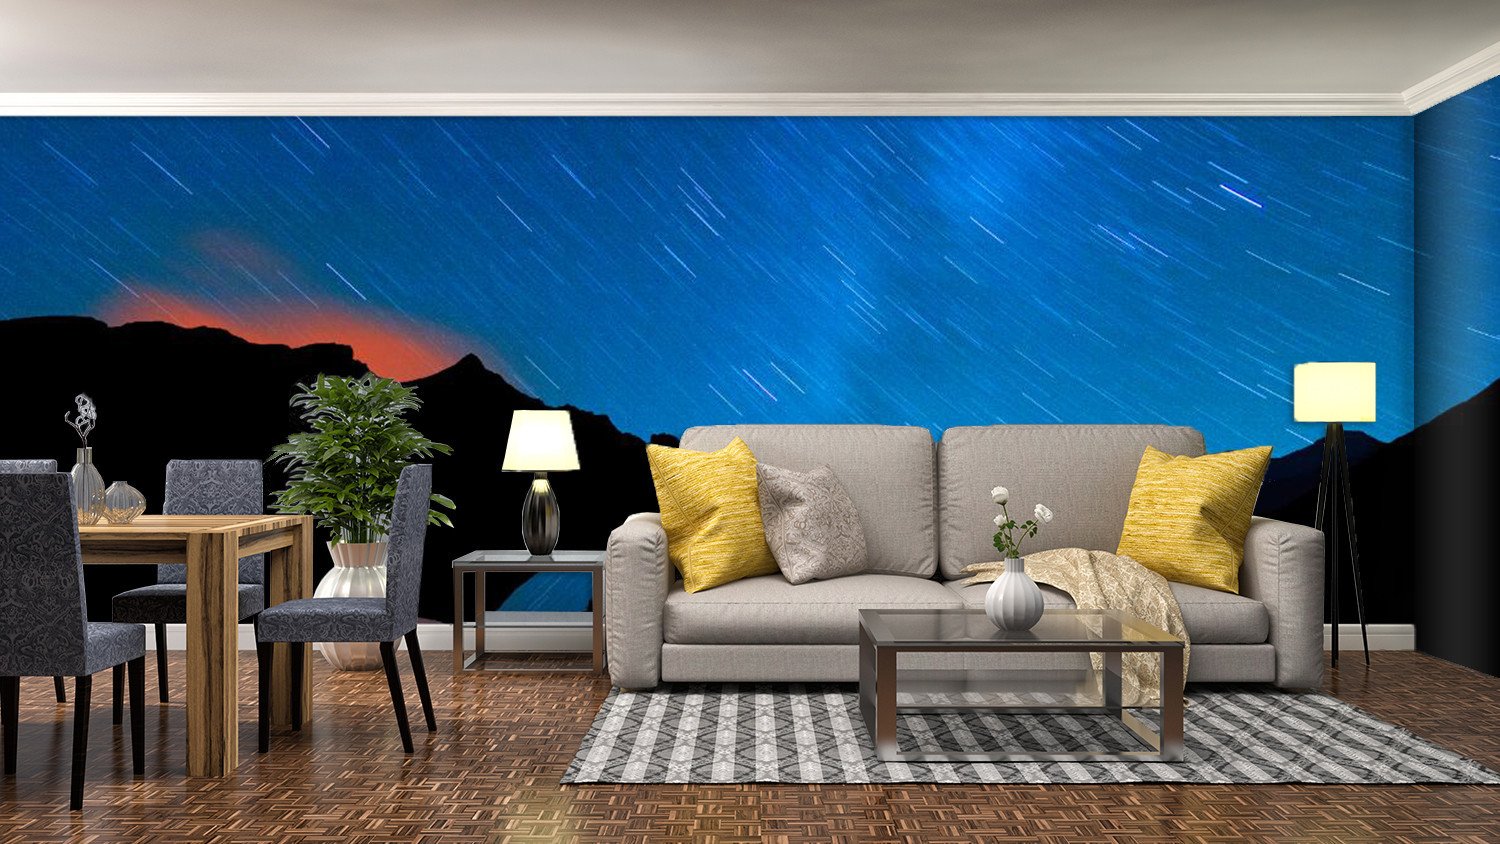 Meteor shower In Night Sky 922 Wallpaper AJ Wallpaper 1 